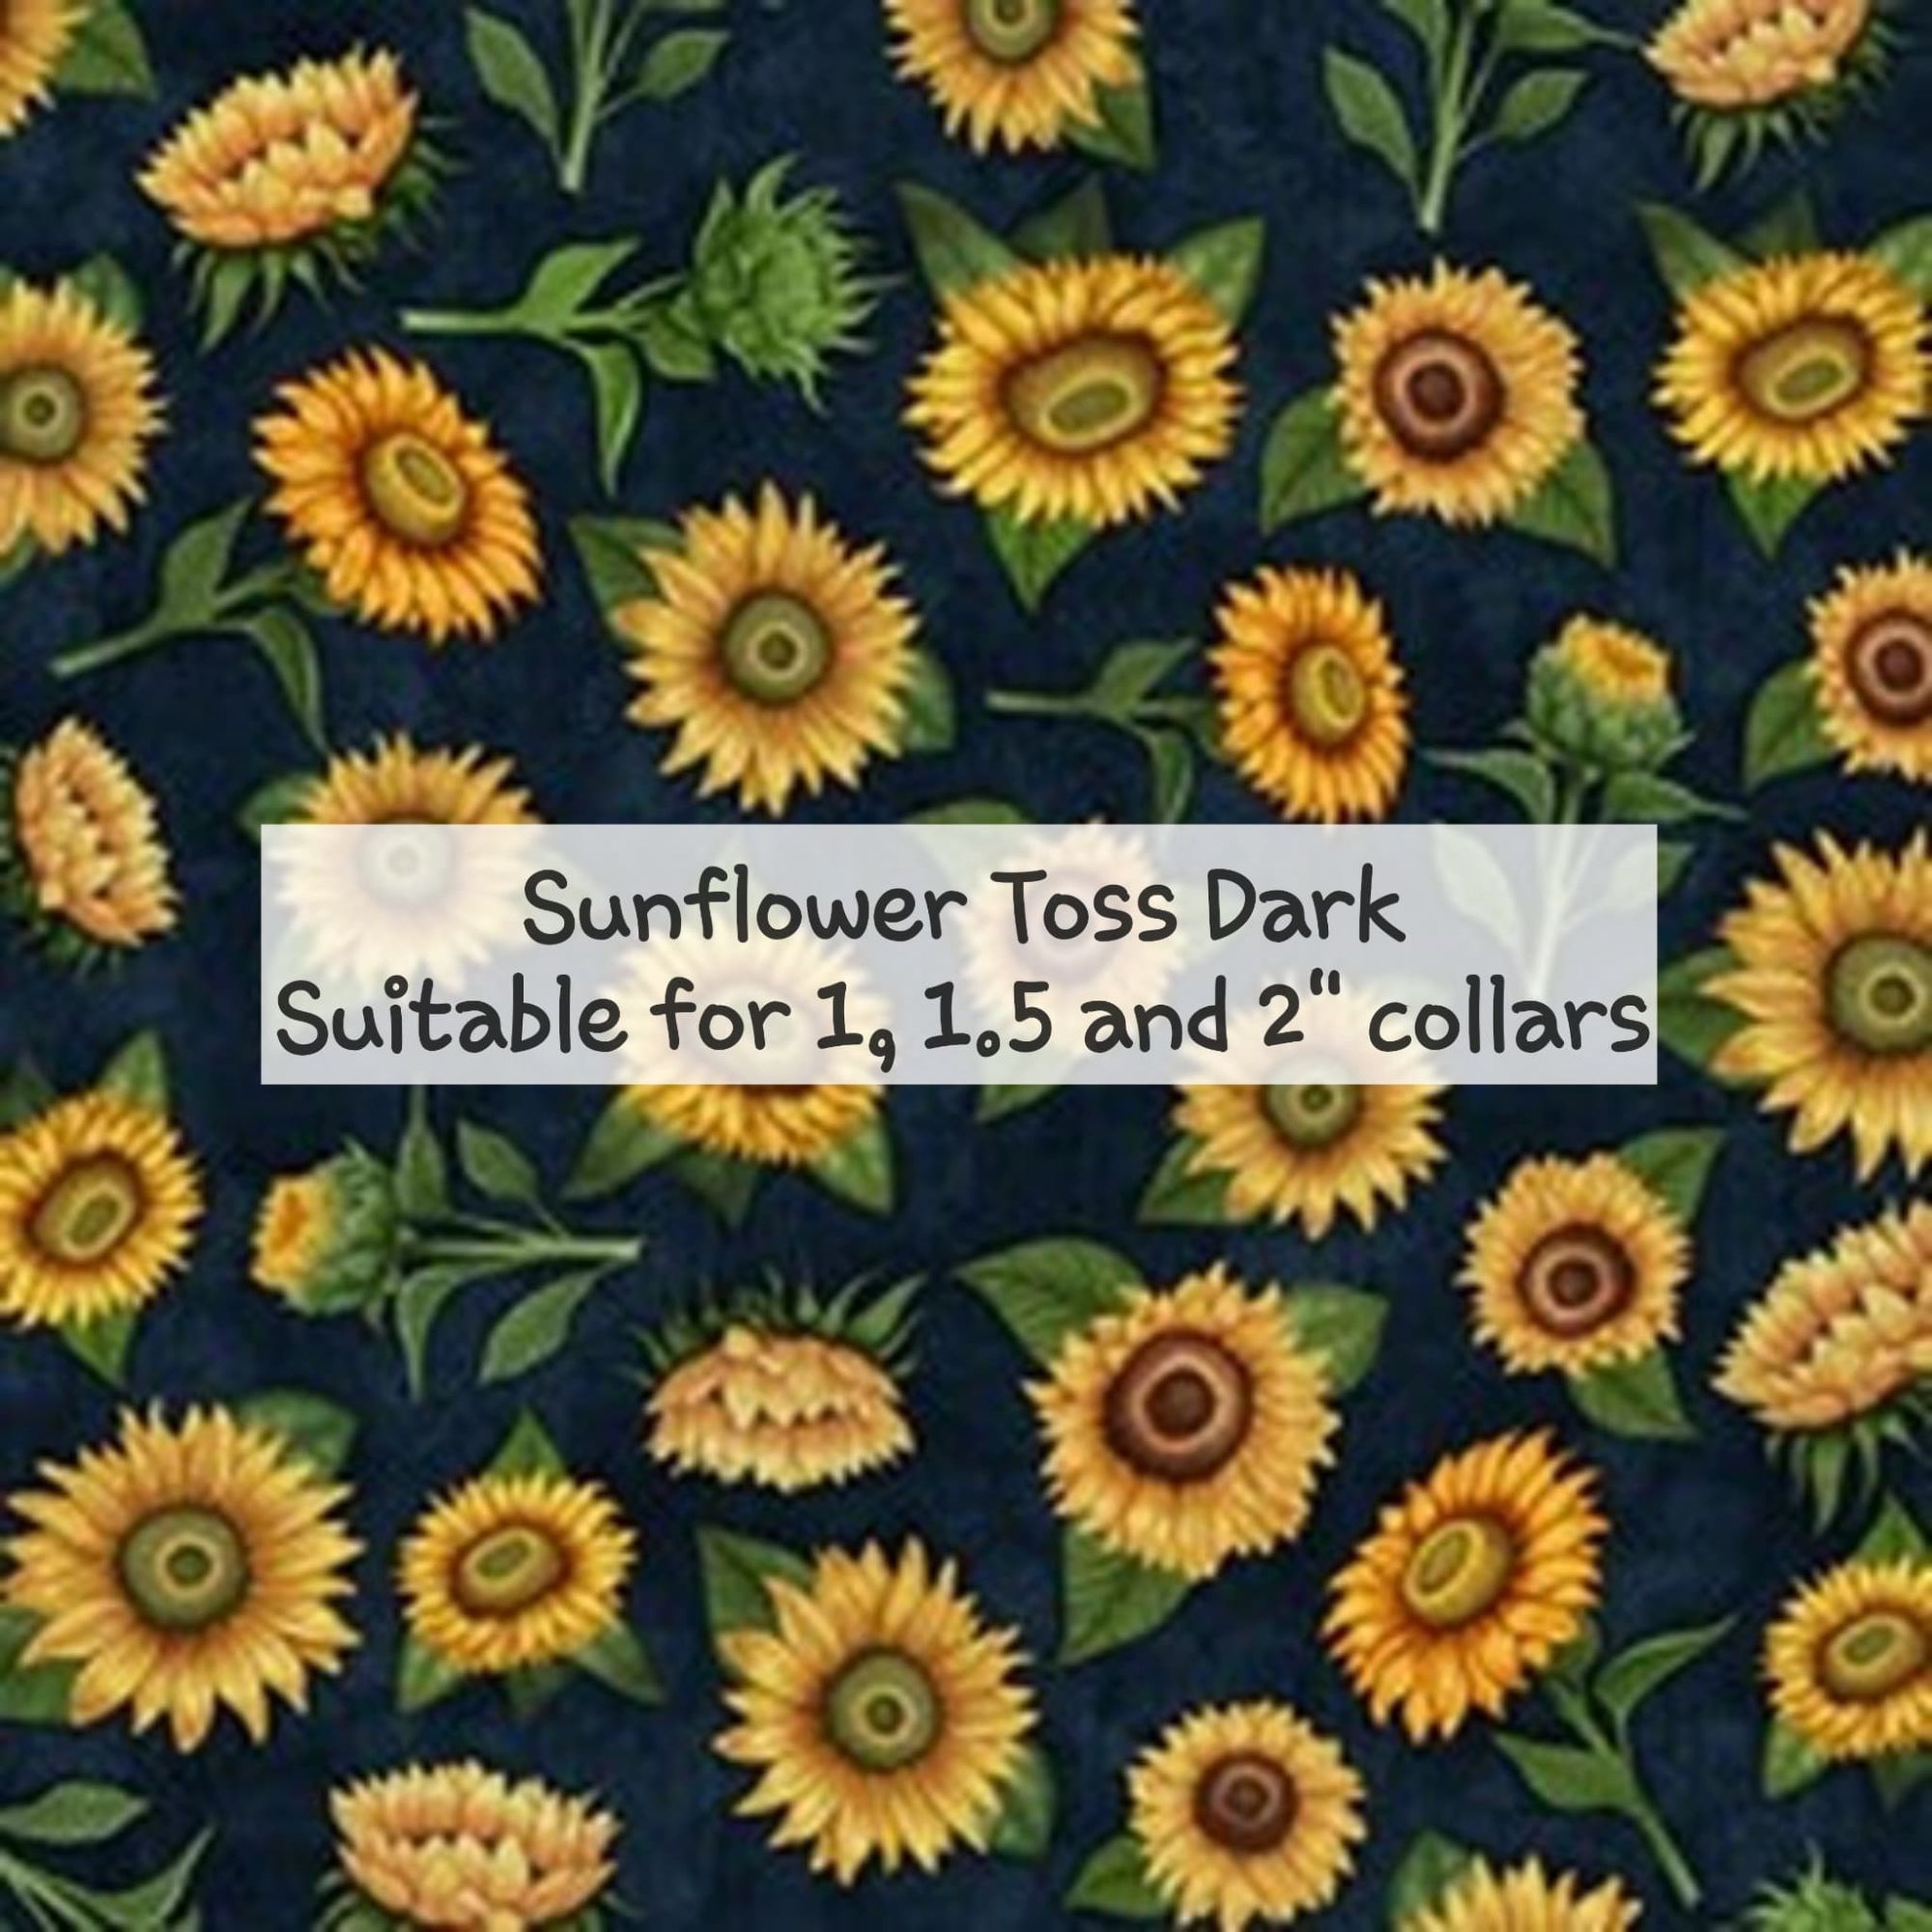 Sunflower toss dark